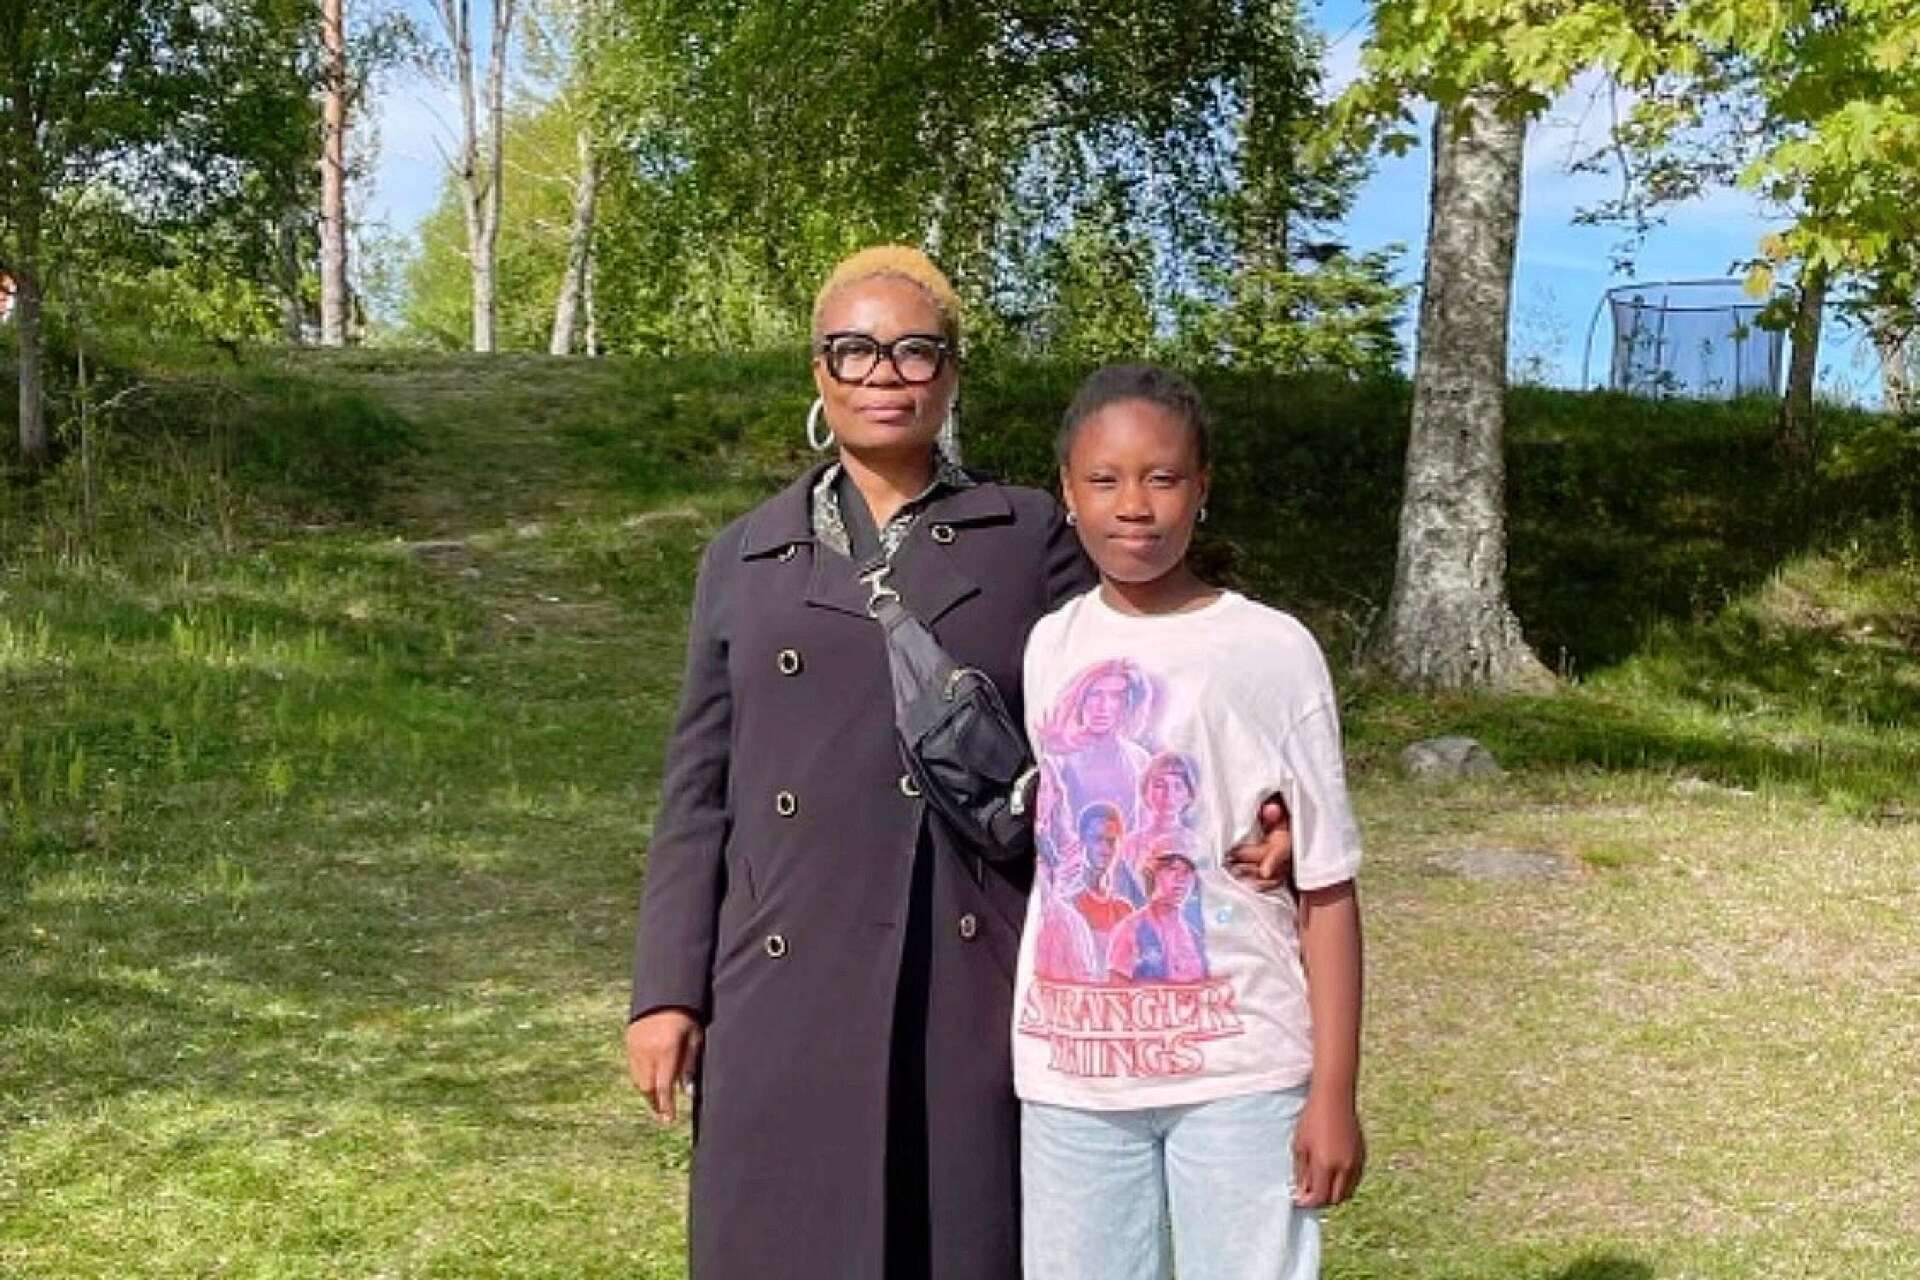 Princess och Blessing får stort stöd av lokalbefolkningen i Årjängs kommun.